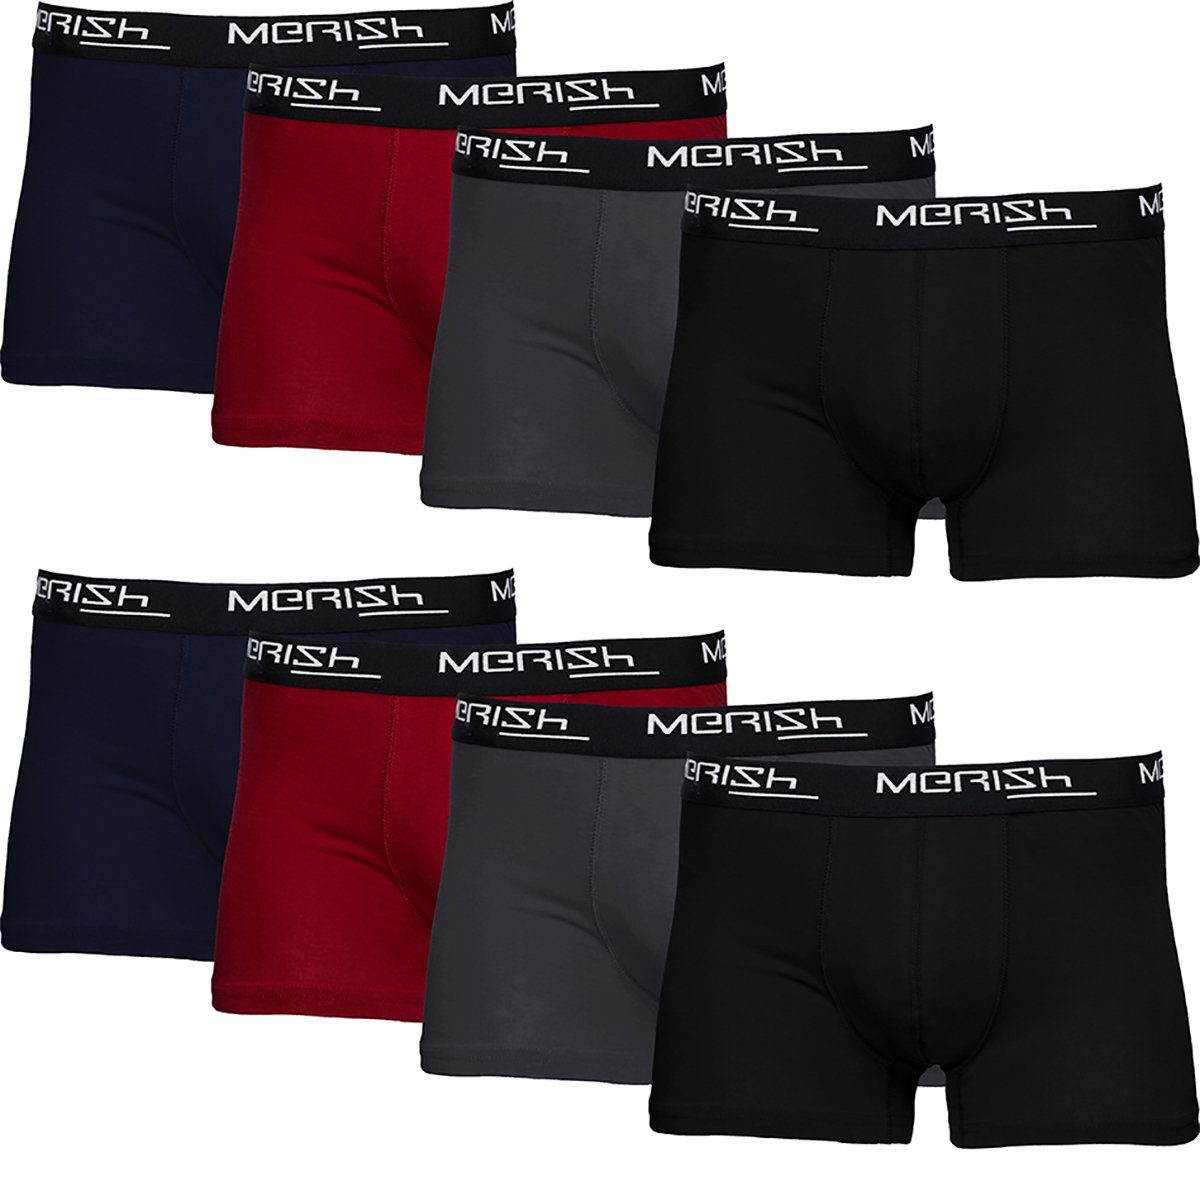 MERISH Boxershorts Herren Männer Unterhosen Baumwolle Premium Qualität perfekte Passform (Vorteilspack, 8er-Pack) S - 7XL 216b-mehrfarbig